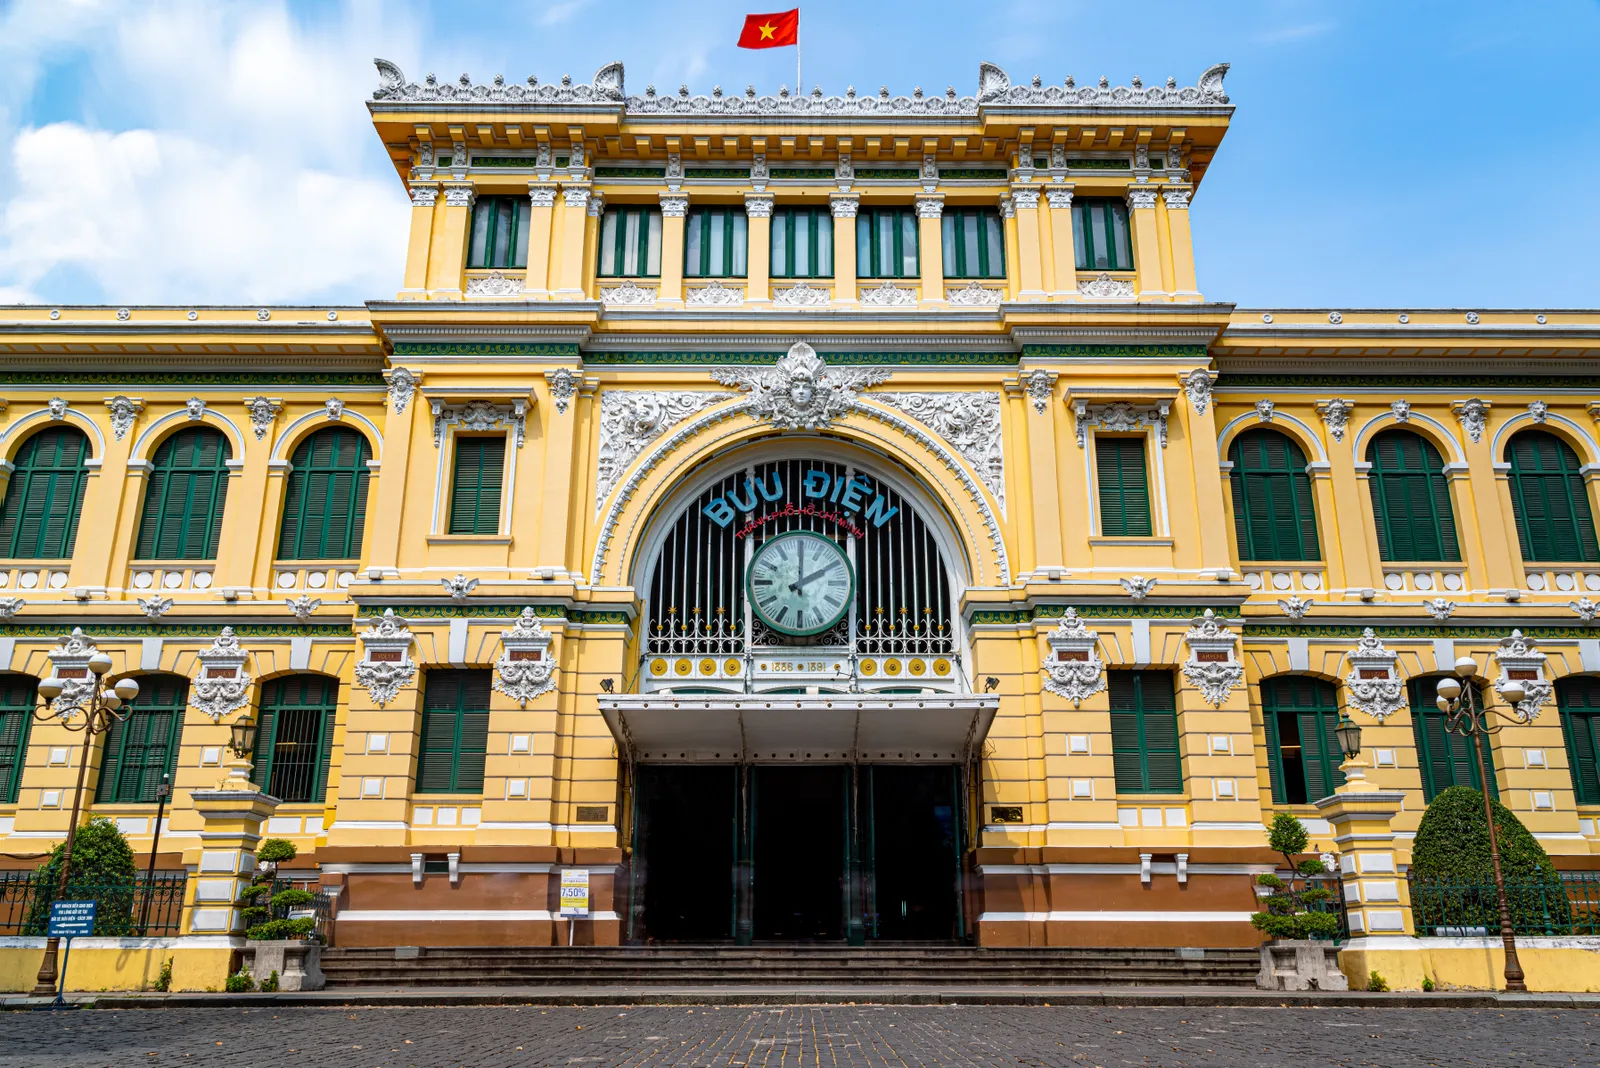 Thành phố Hồ Chí Minh, Việt Nam Mặt tiền màu vàng và cửa chớp màu xanh lá cây của Bưu điện Trung tâm Sài Gòn tại Thành phố Hồ Chí Minh đã biến tòa nhà không chỉ thành một bưu điện mà còn là một điểm thu hút khách du lịch. Cấu trúc này được thiết kế bởi Alfred Foulhoux vào cuối những năm 1880 khi Việt Nam là một phần của Đông Dương thuộc Pháp và do đó có nhiều yếu tố của phong cách kiến ​​trúc phục hưng, gothic và các phong cách Pháp khác.